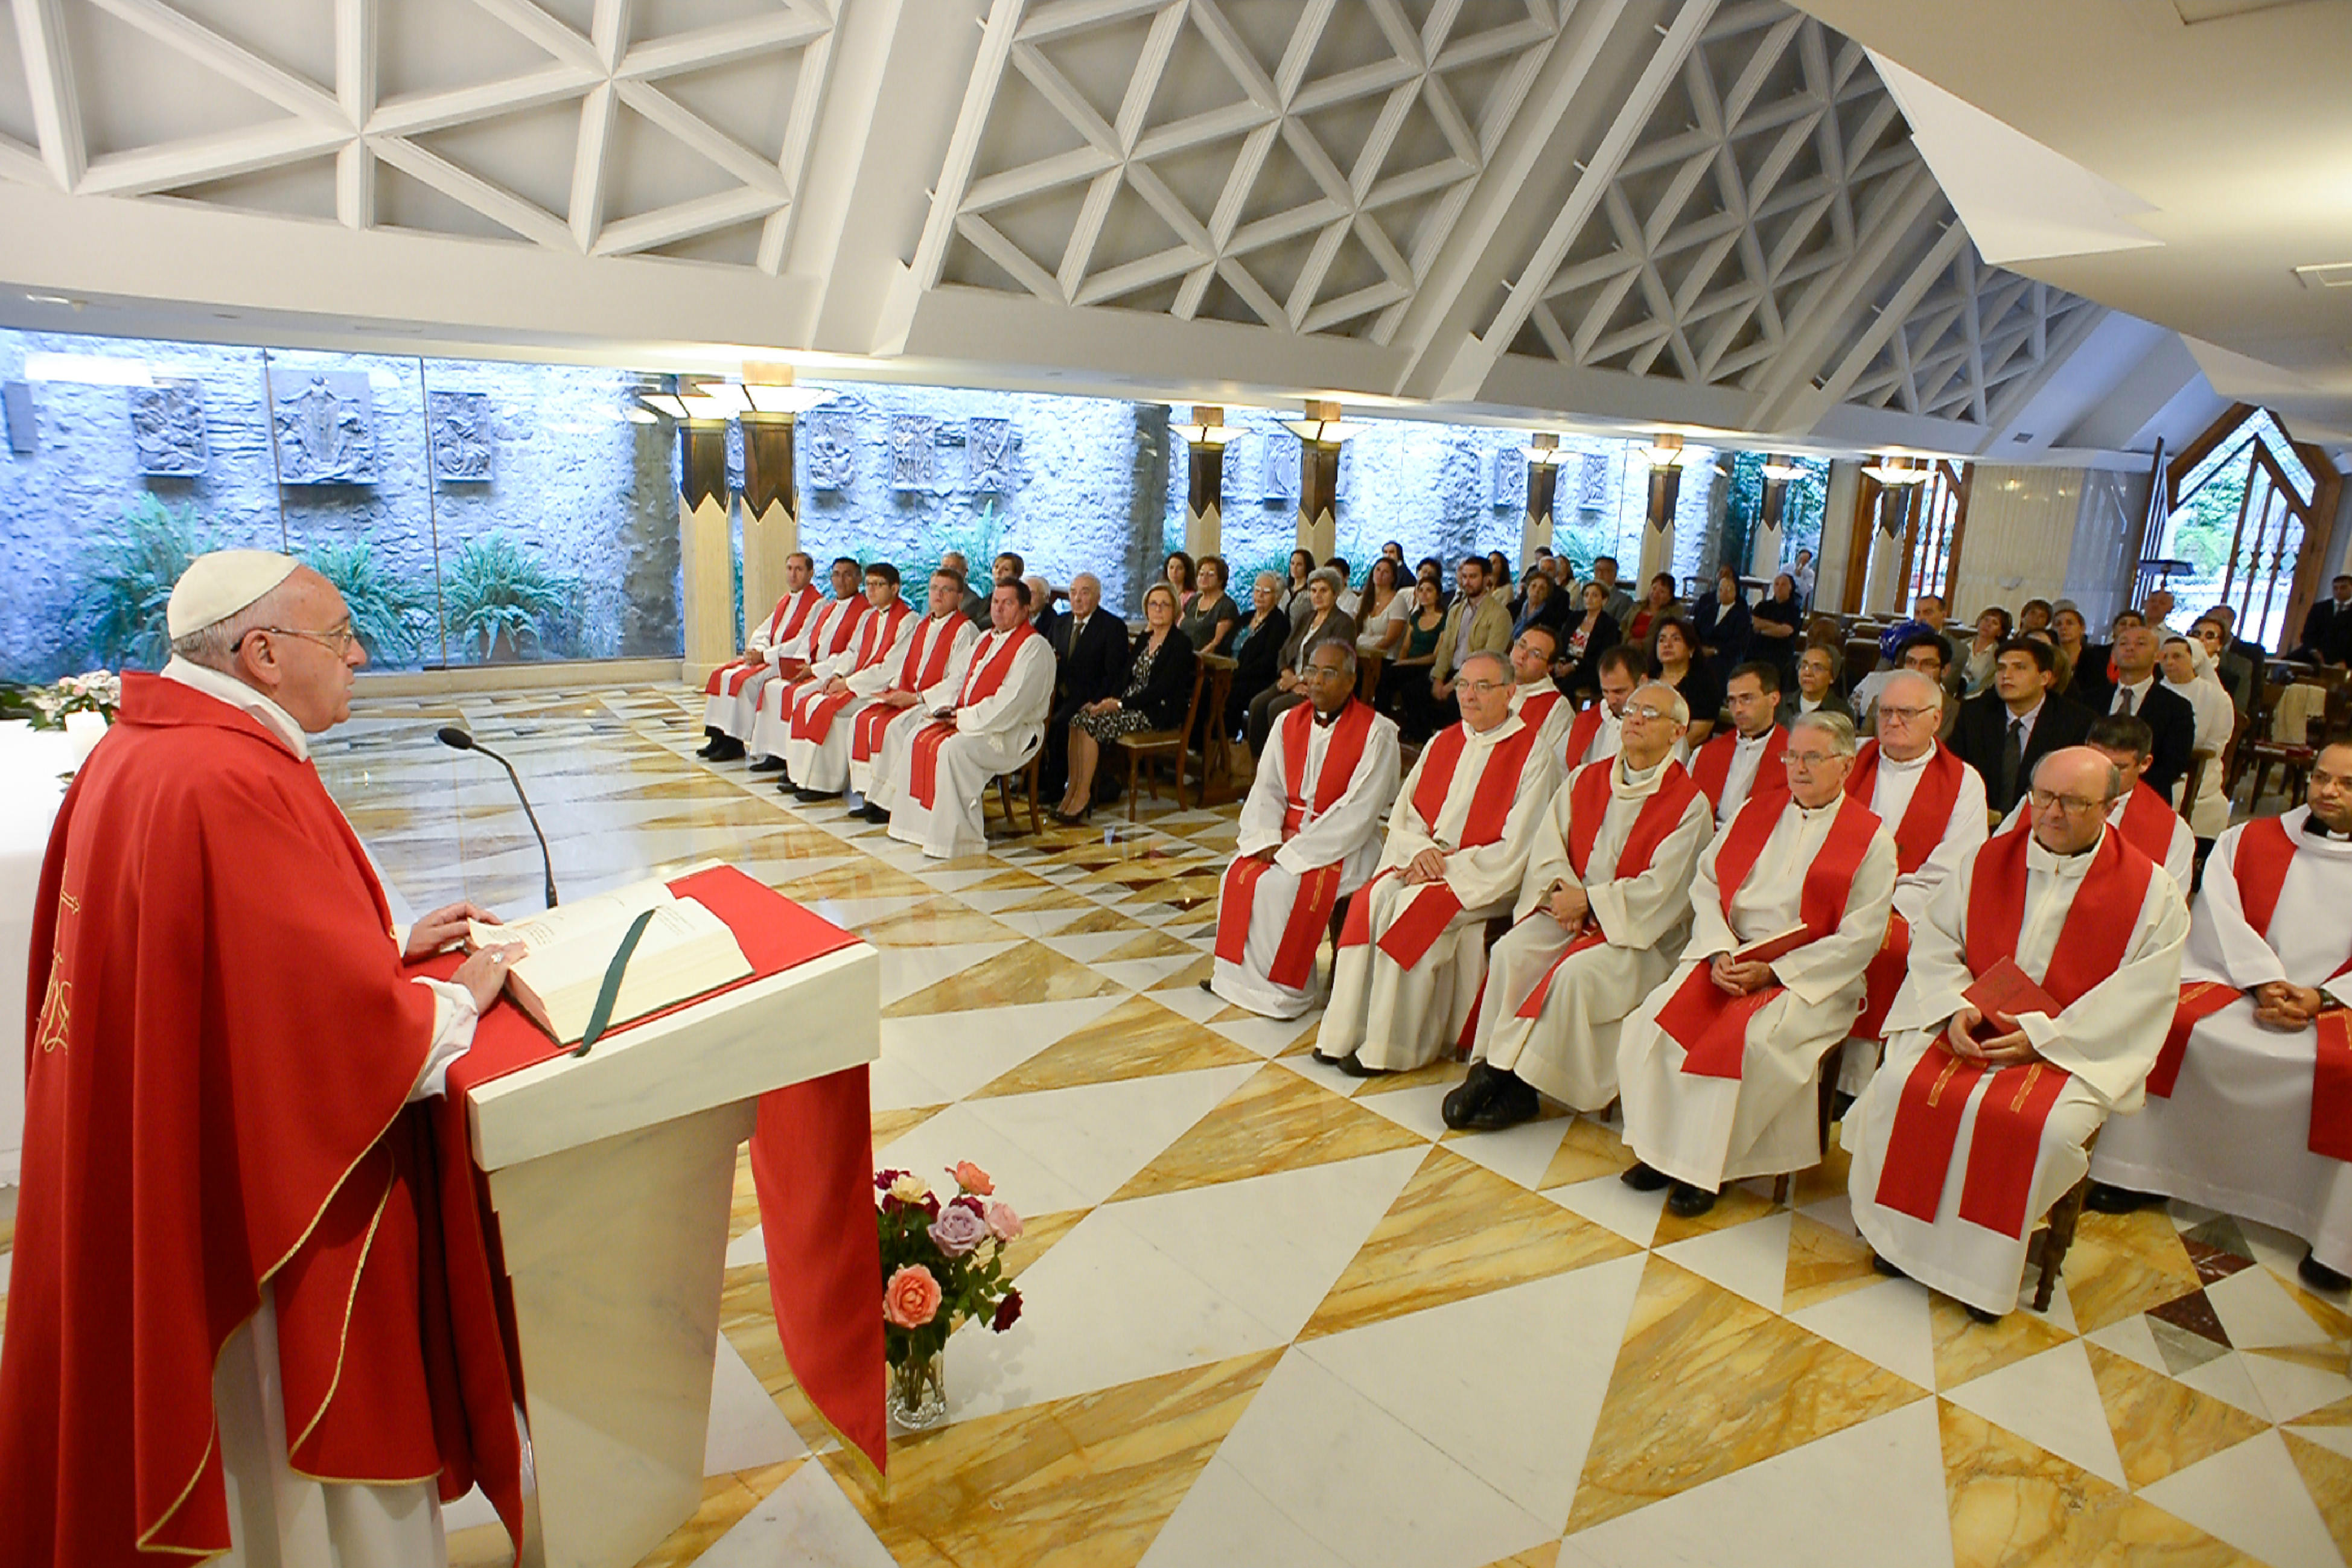 Pope Francis celebrating Mass at Santa Marta - June 11th 2015